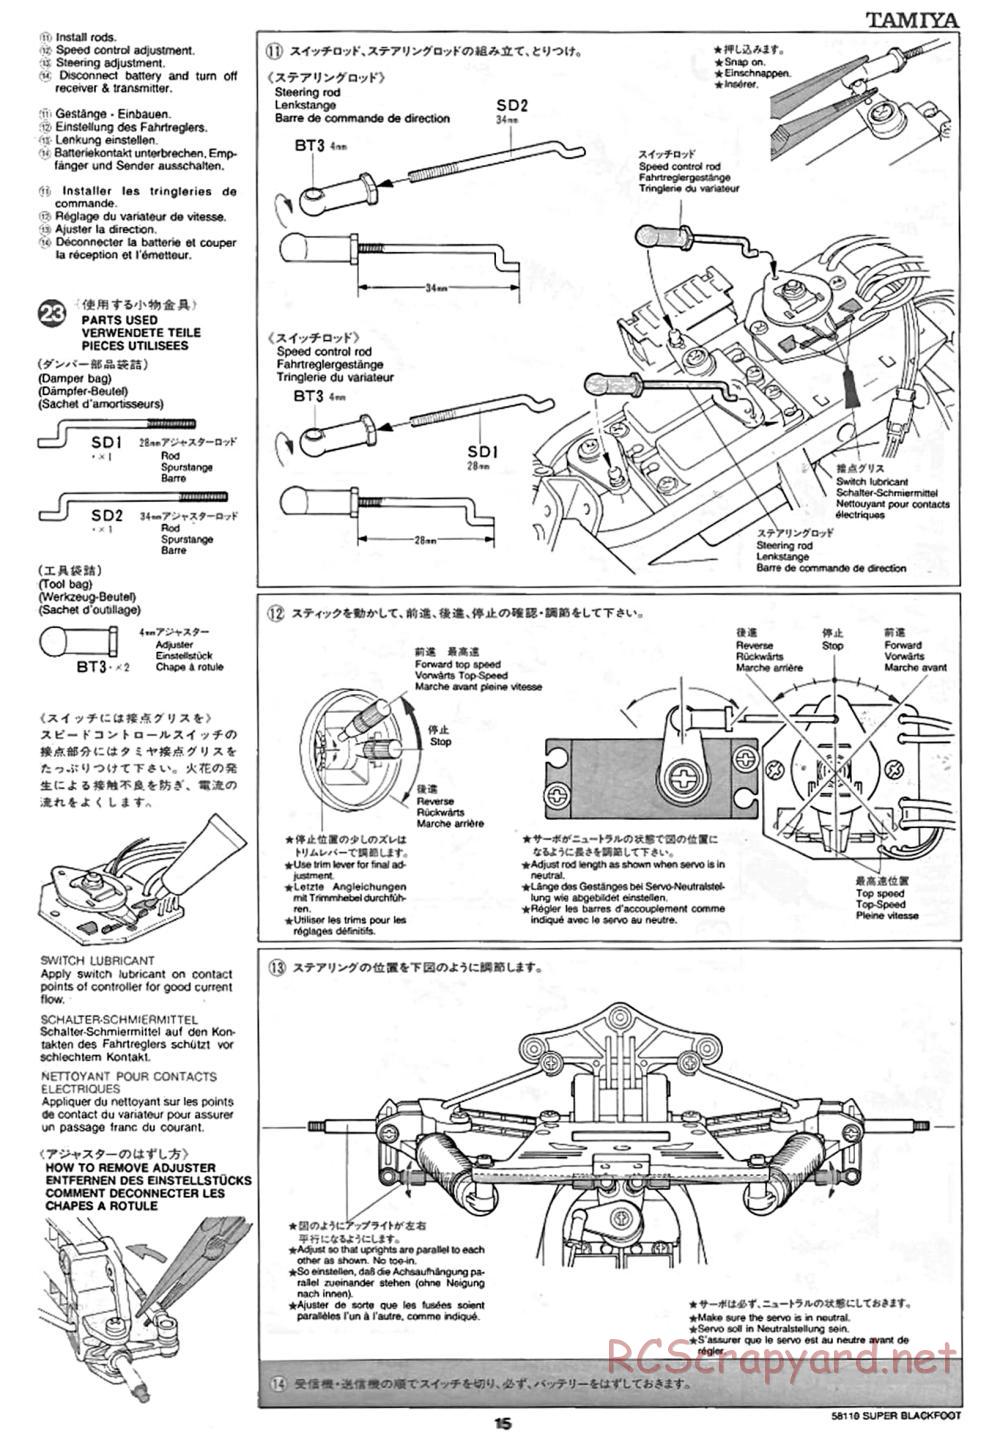 Tamiya - Super Blackfoot Chassis - Manual - Page 15